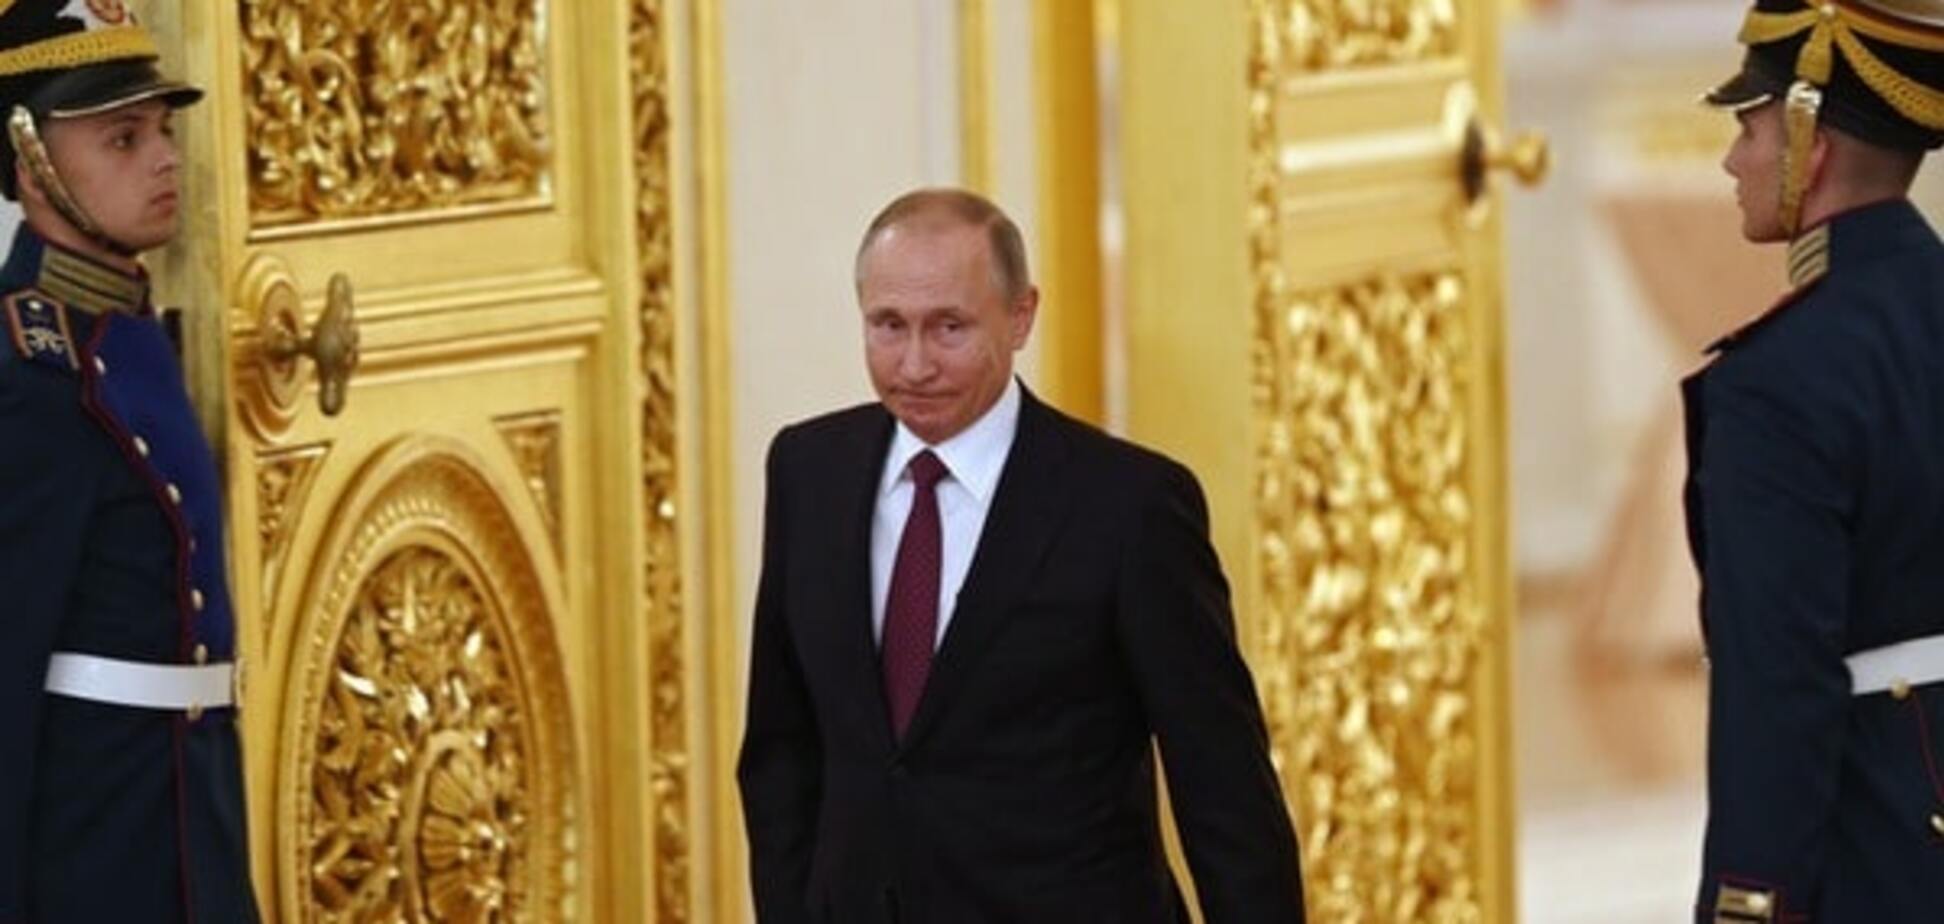 Підтримка влади - міф: Піонтковський озвучив реальний рейтинг Путіна в Росії